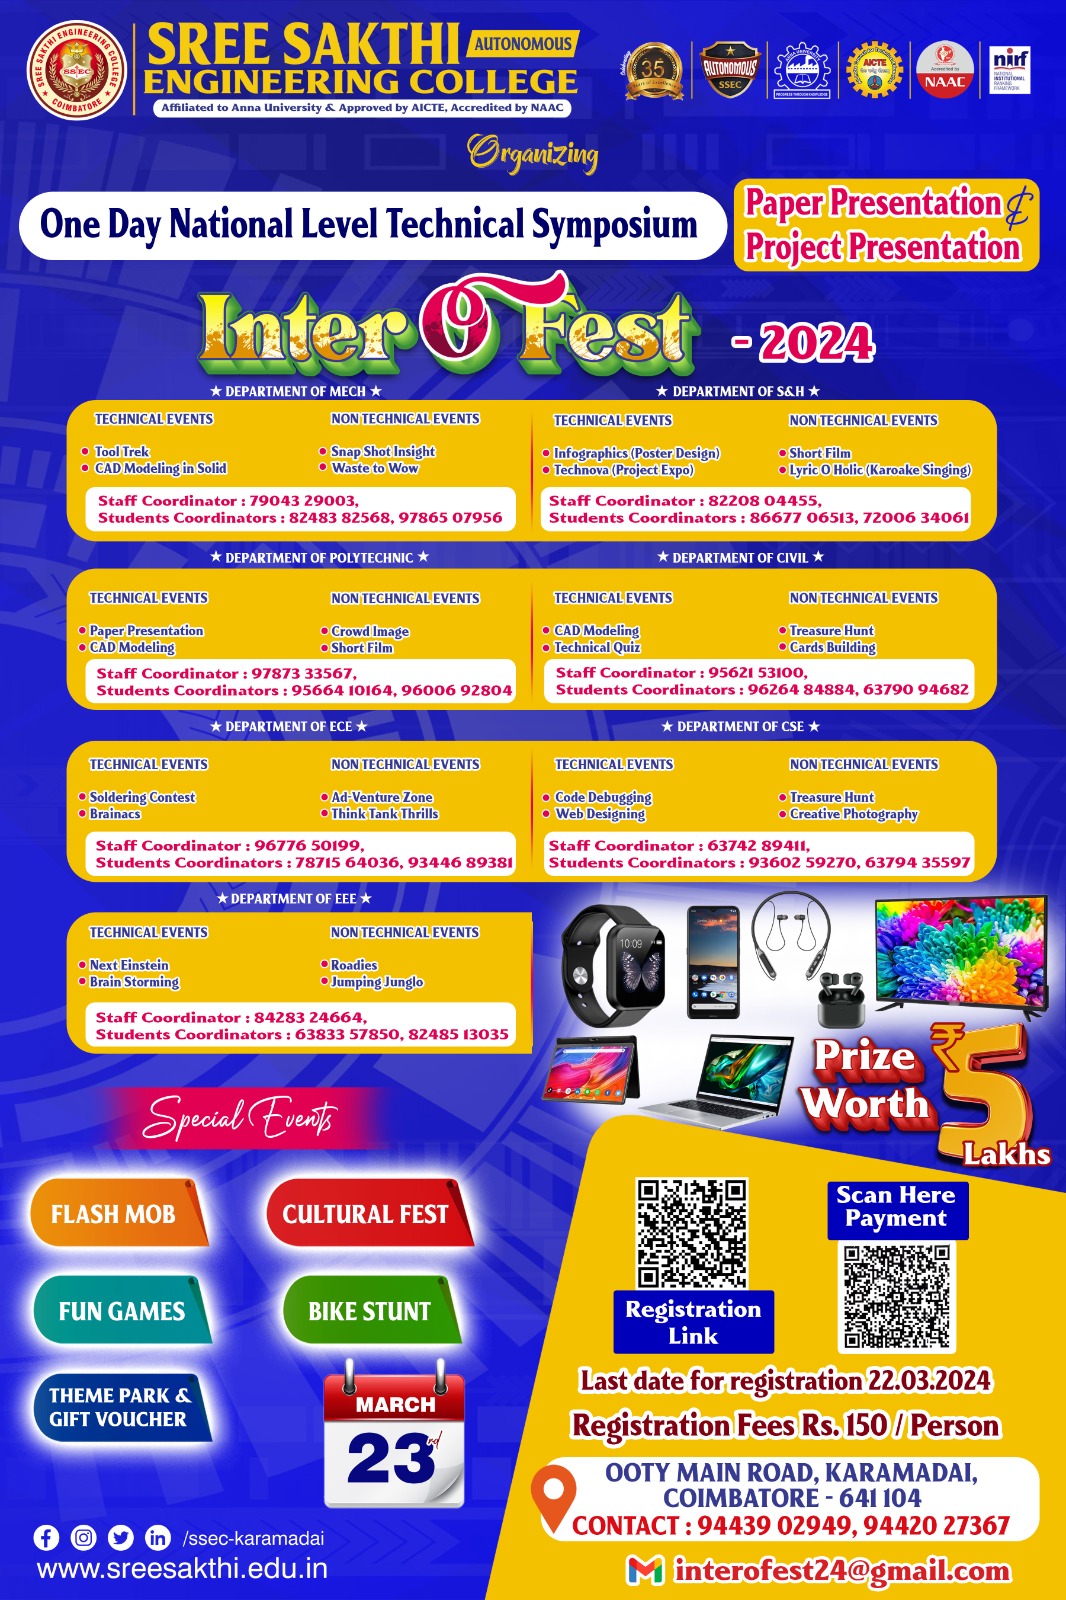 Inter"O"Fest 2K24